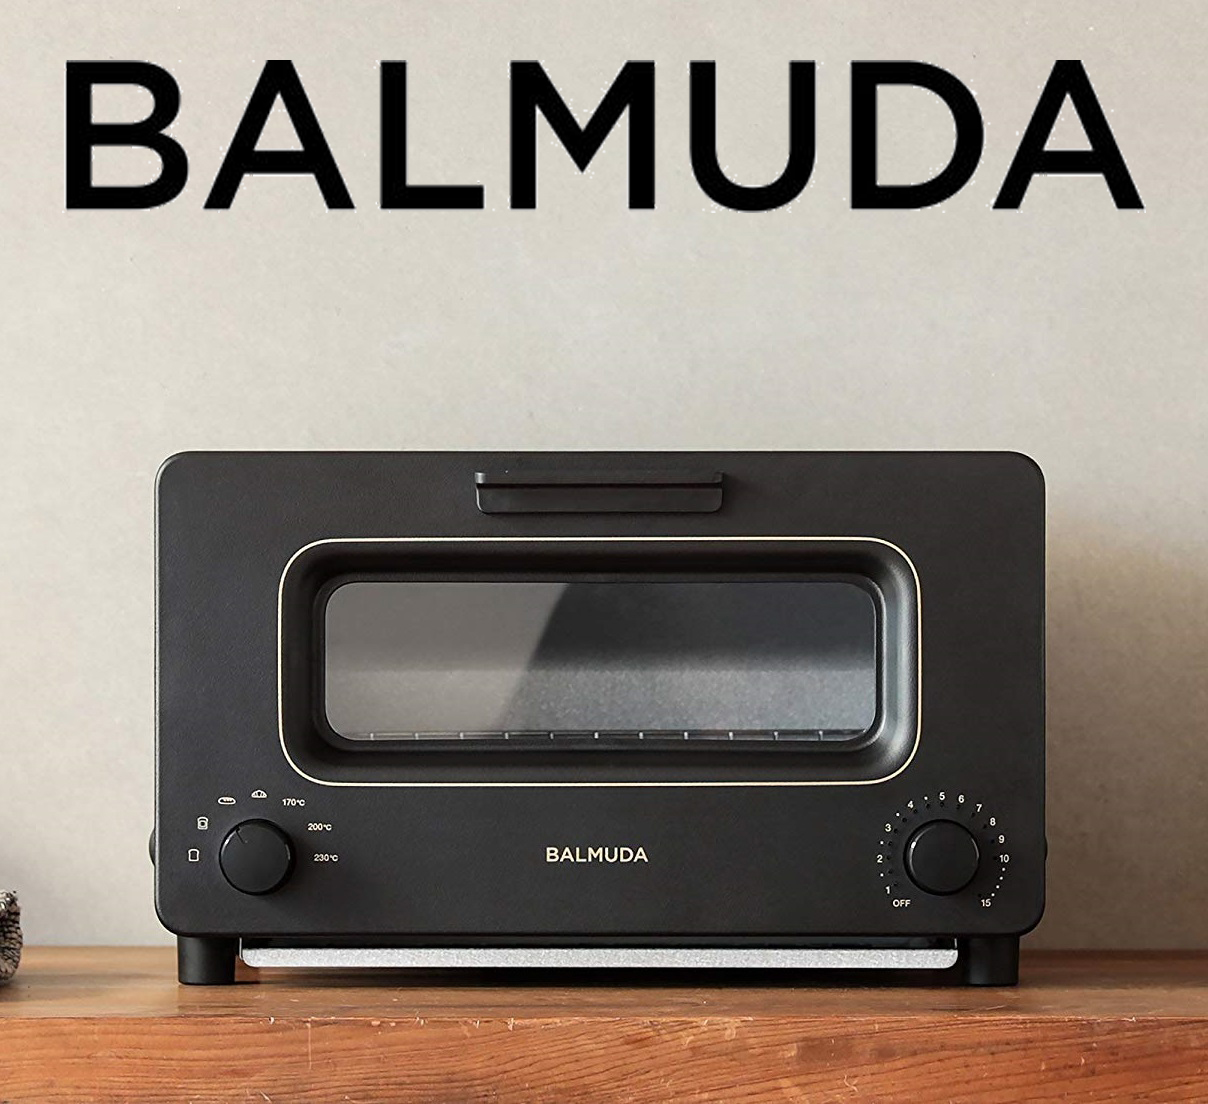 【BALMUDA】スチームオーブントースター|商品詳細【セレプレ】